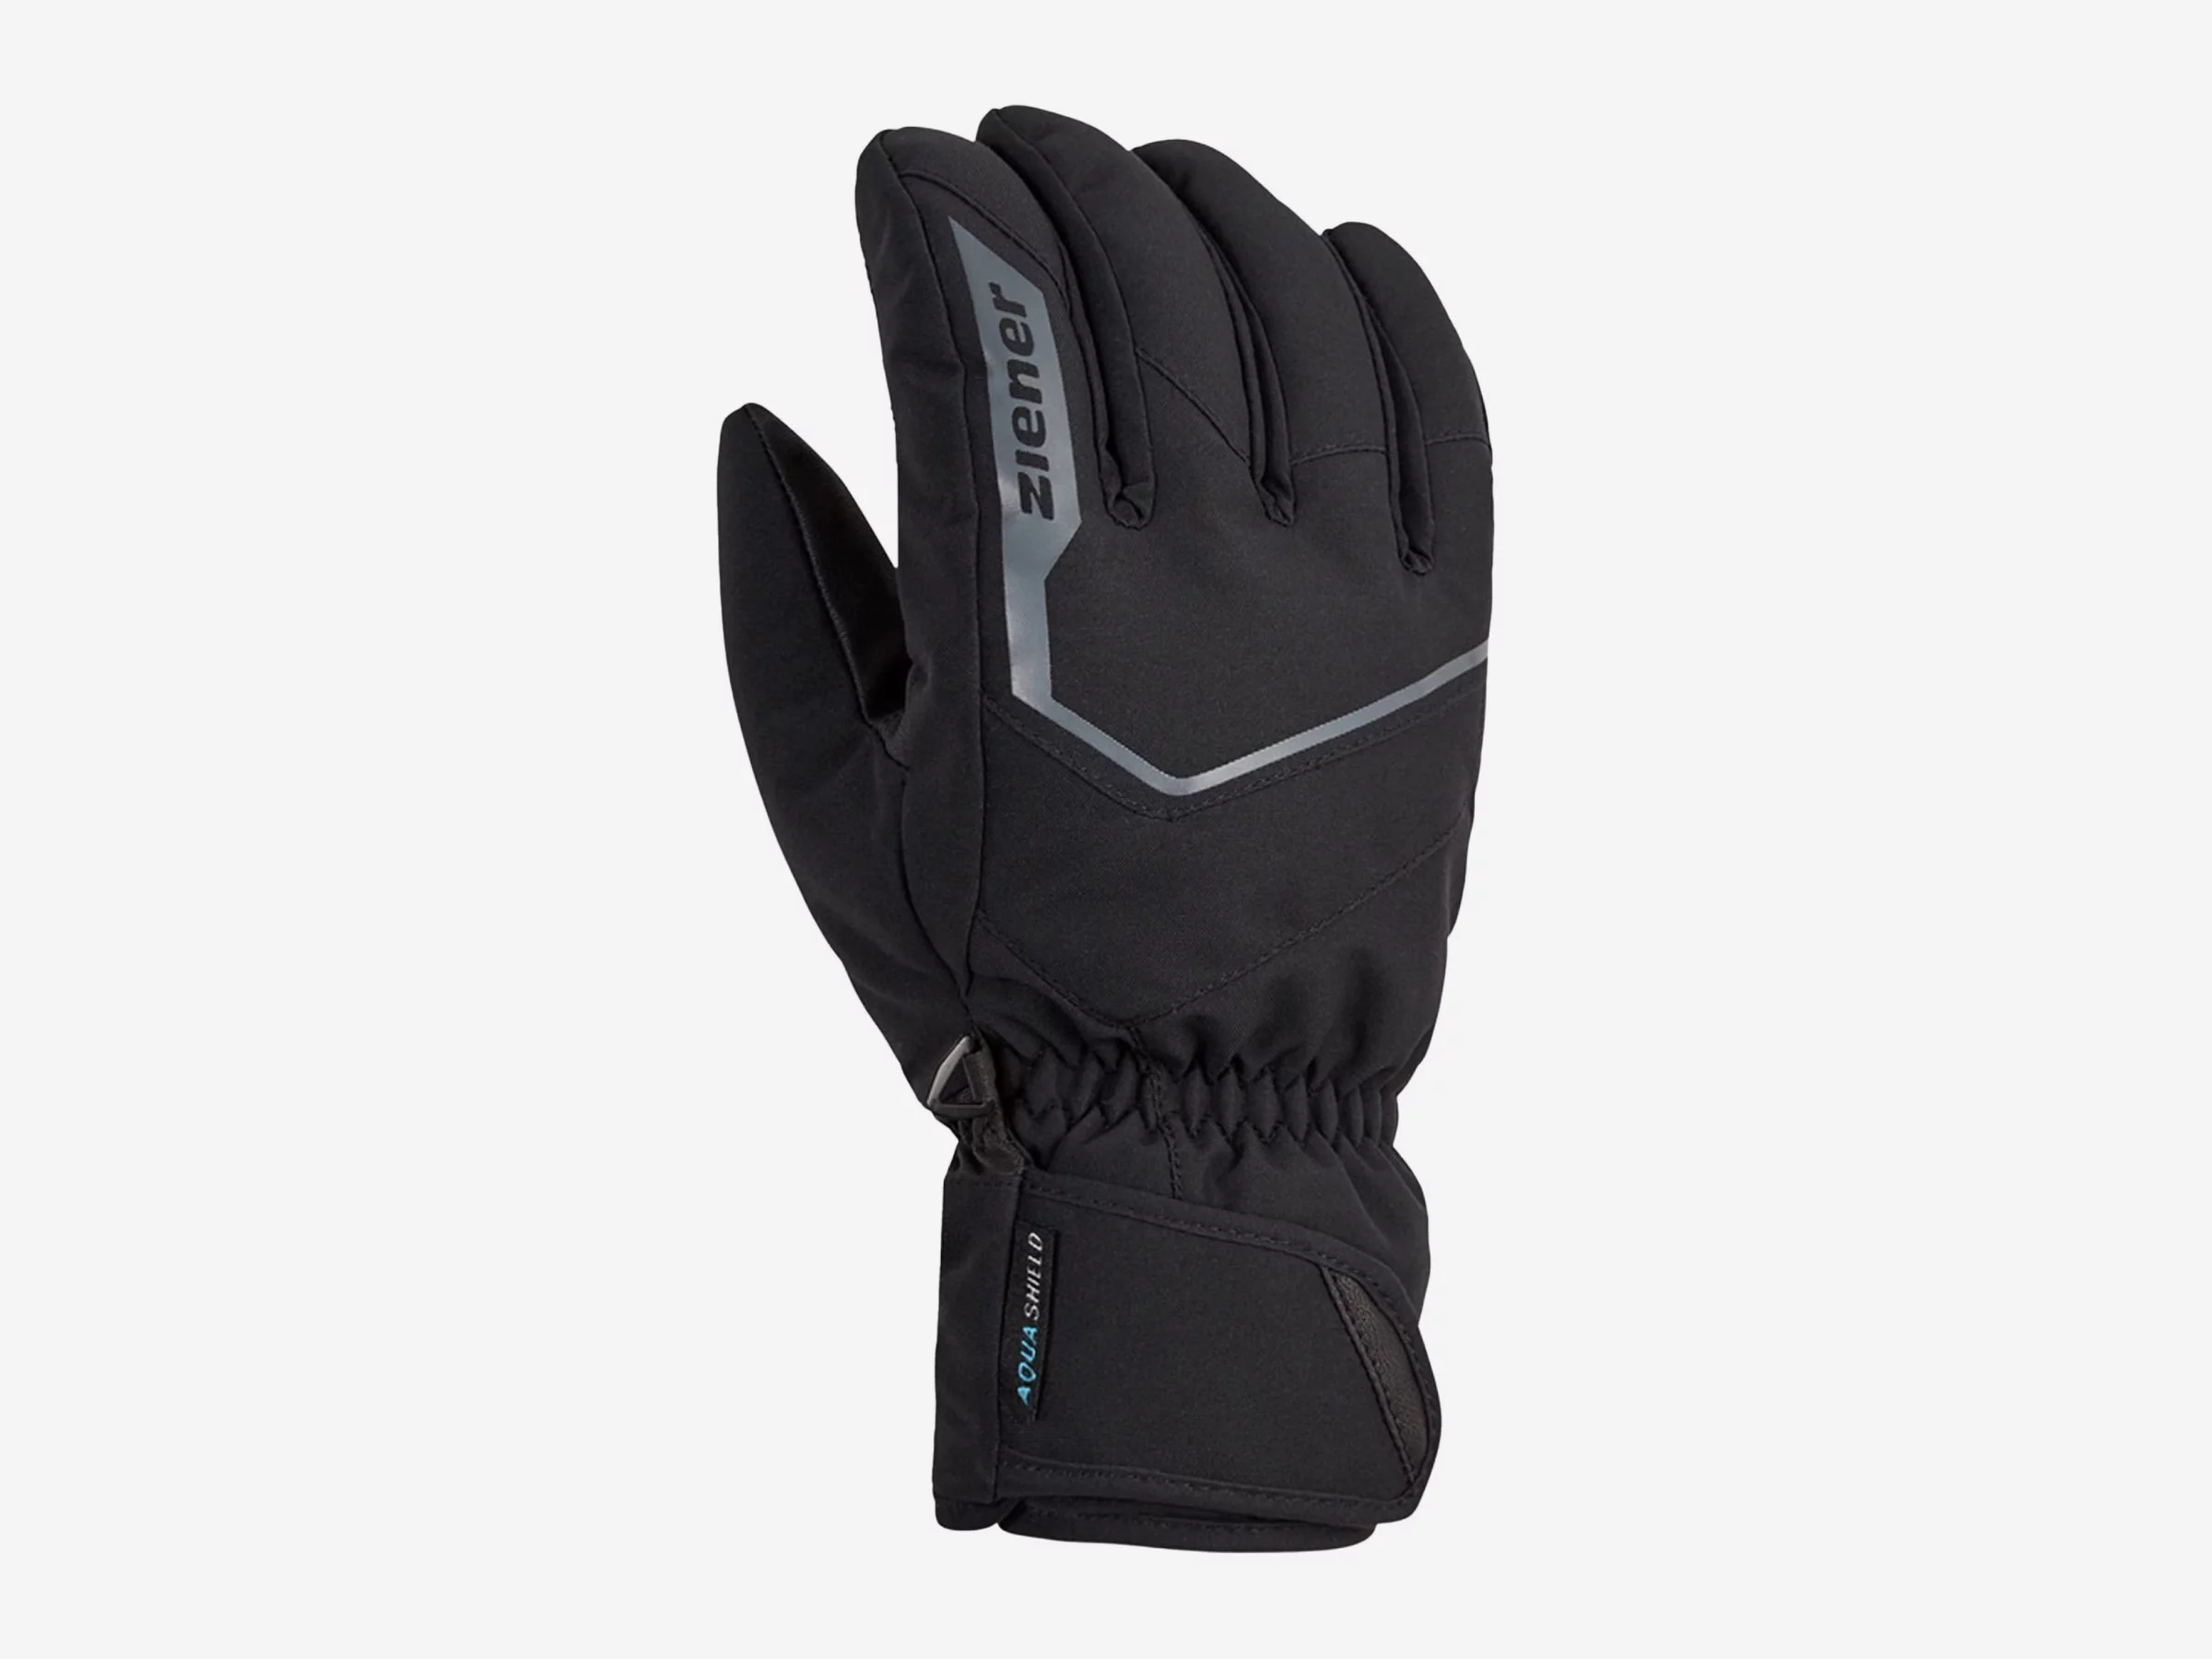 about AS(R) GARIGON Handschuhe | Unisex Ziener sports